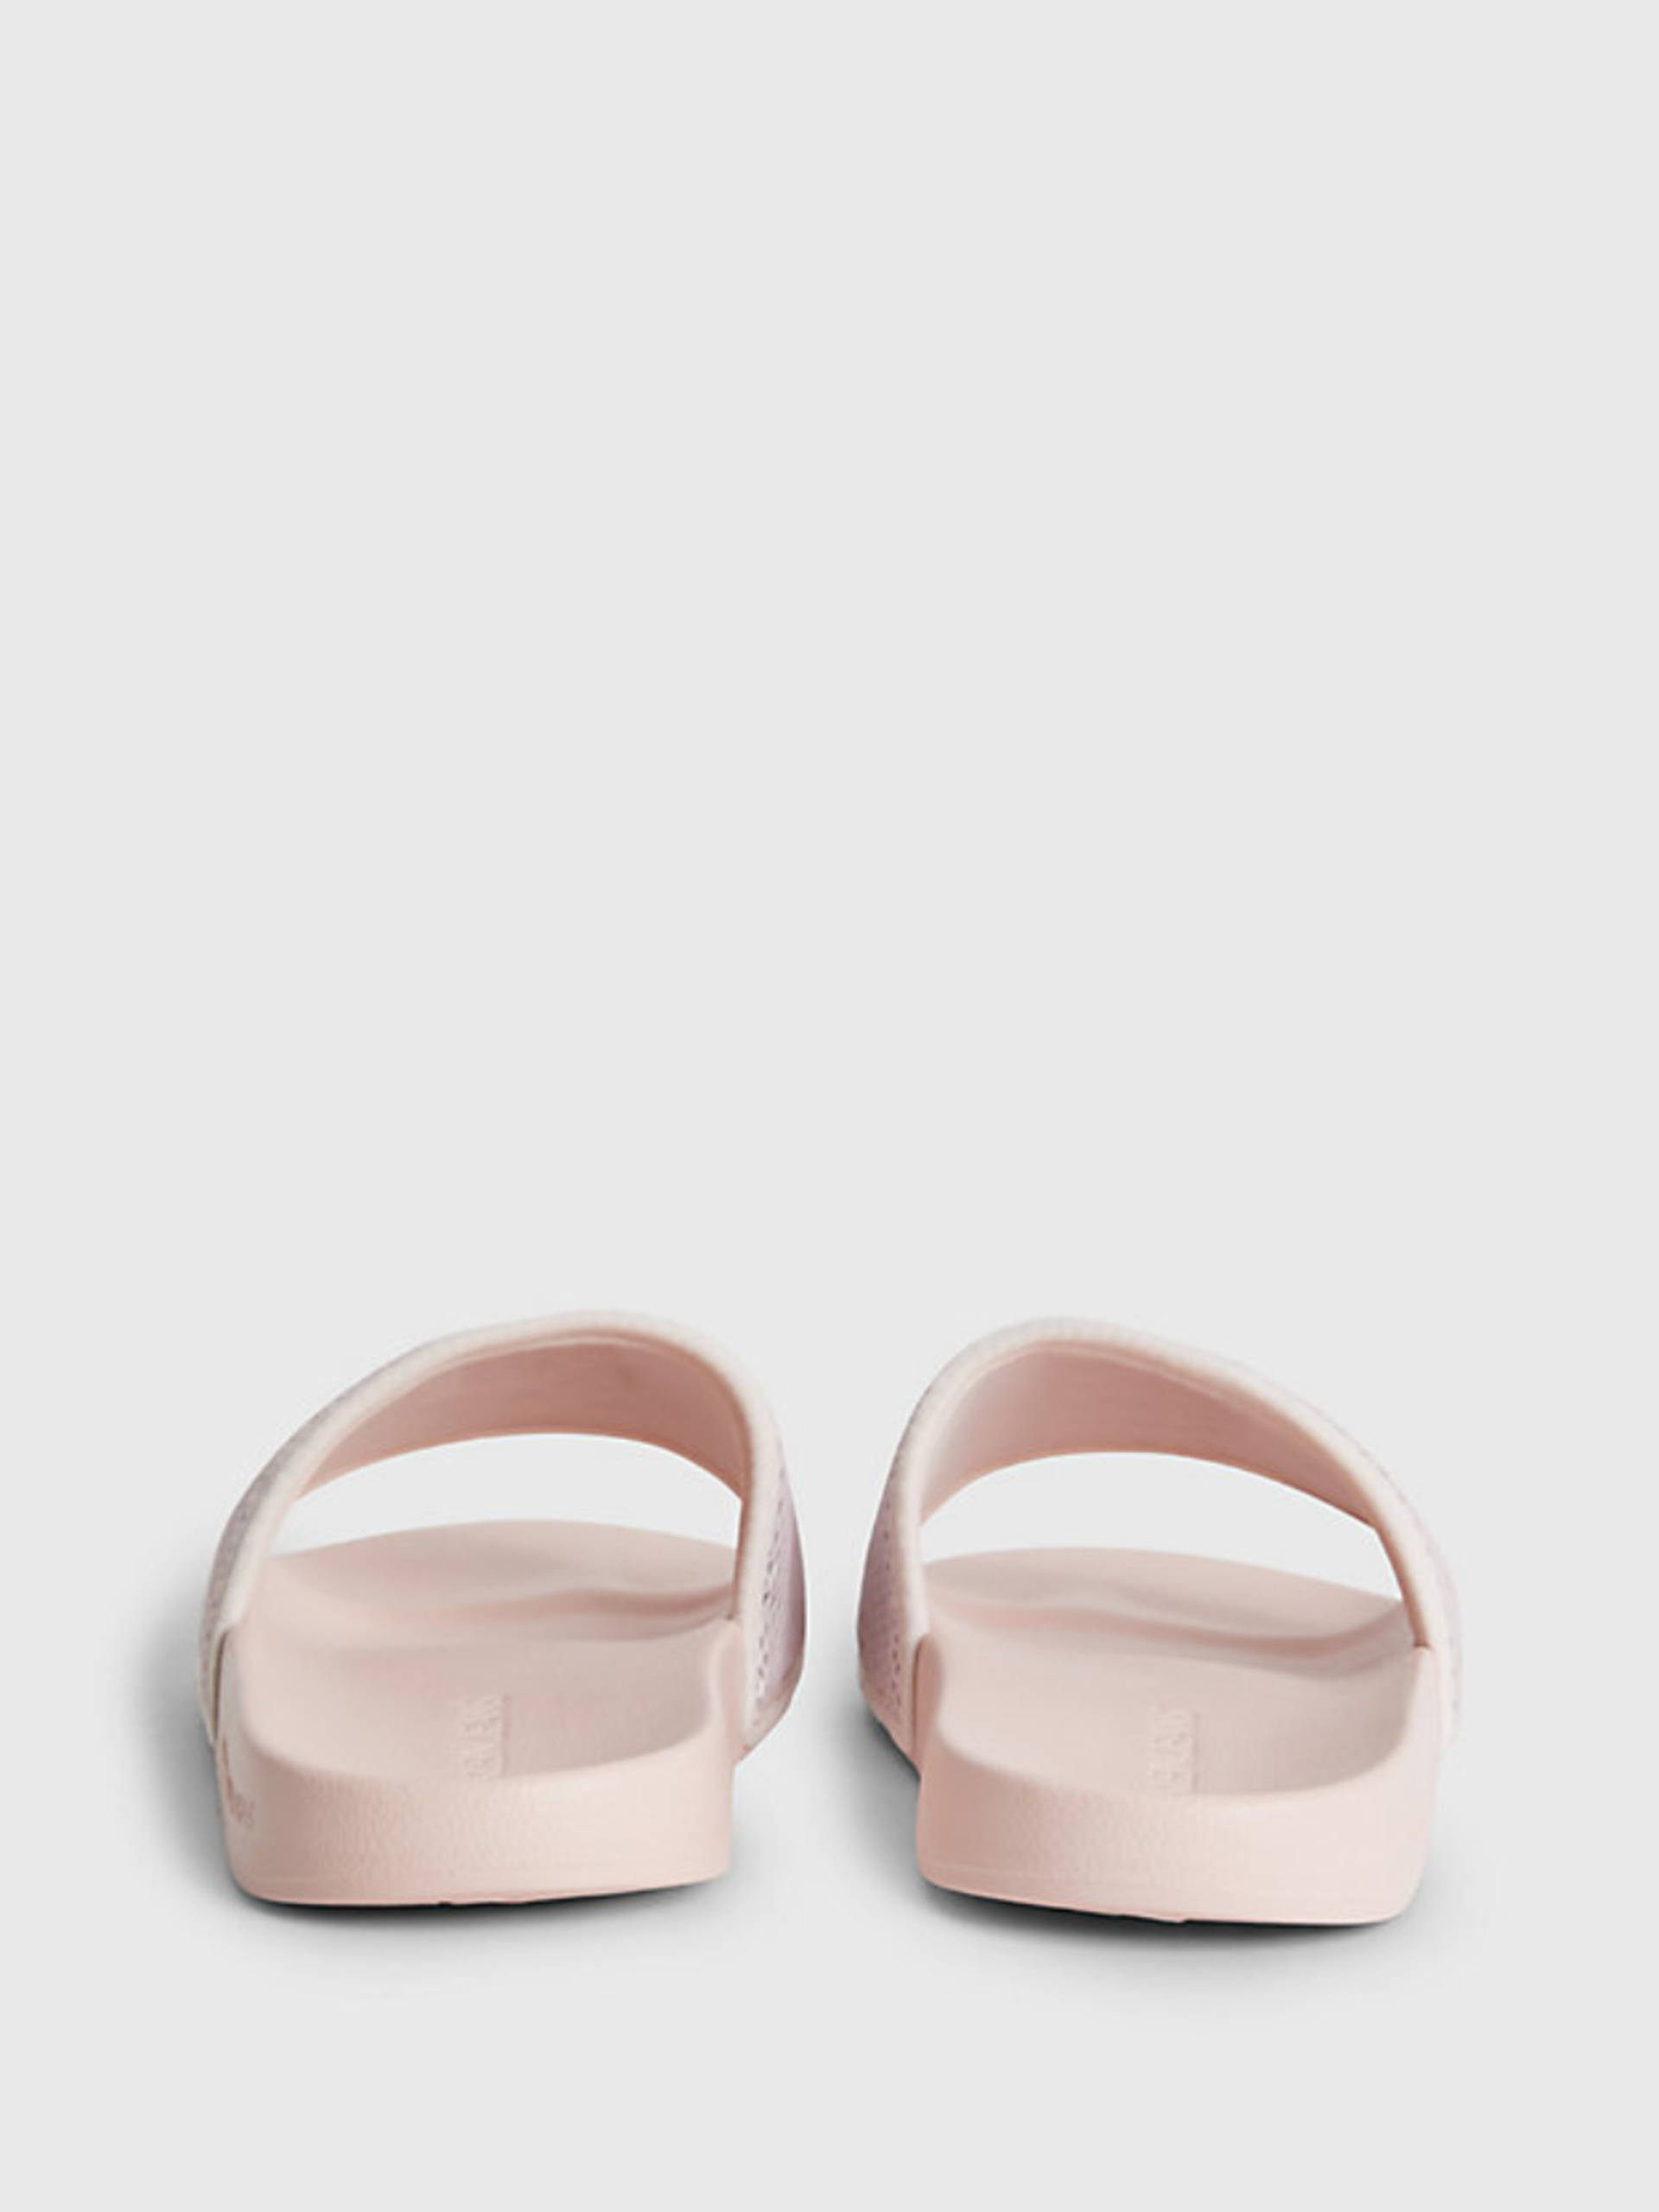 Calvin Klein dámské růžové pantofle - 36 (0JW)